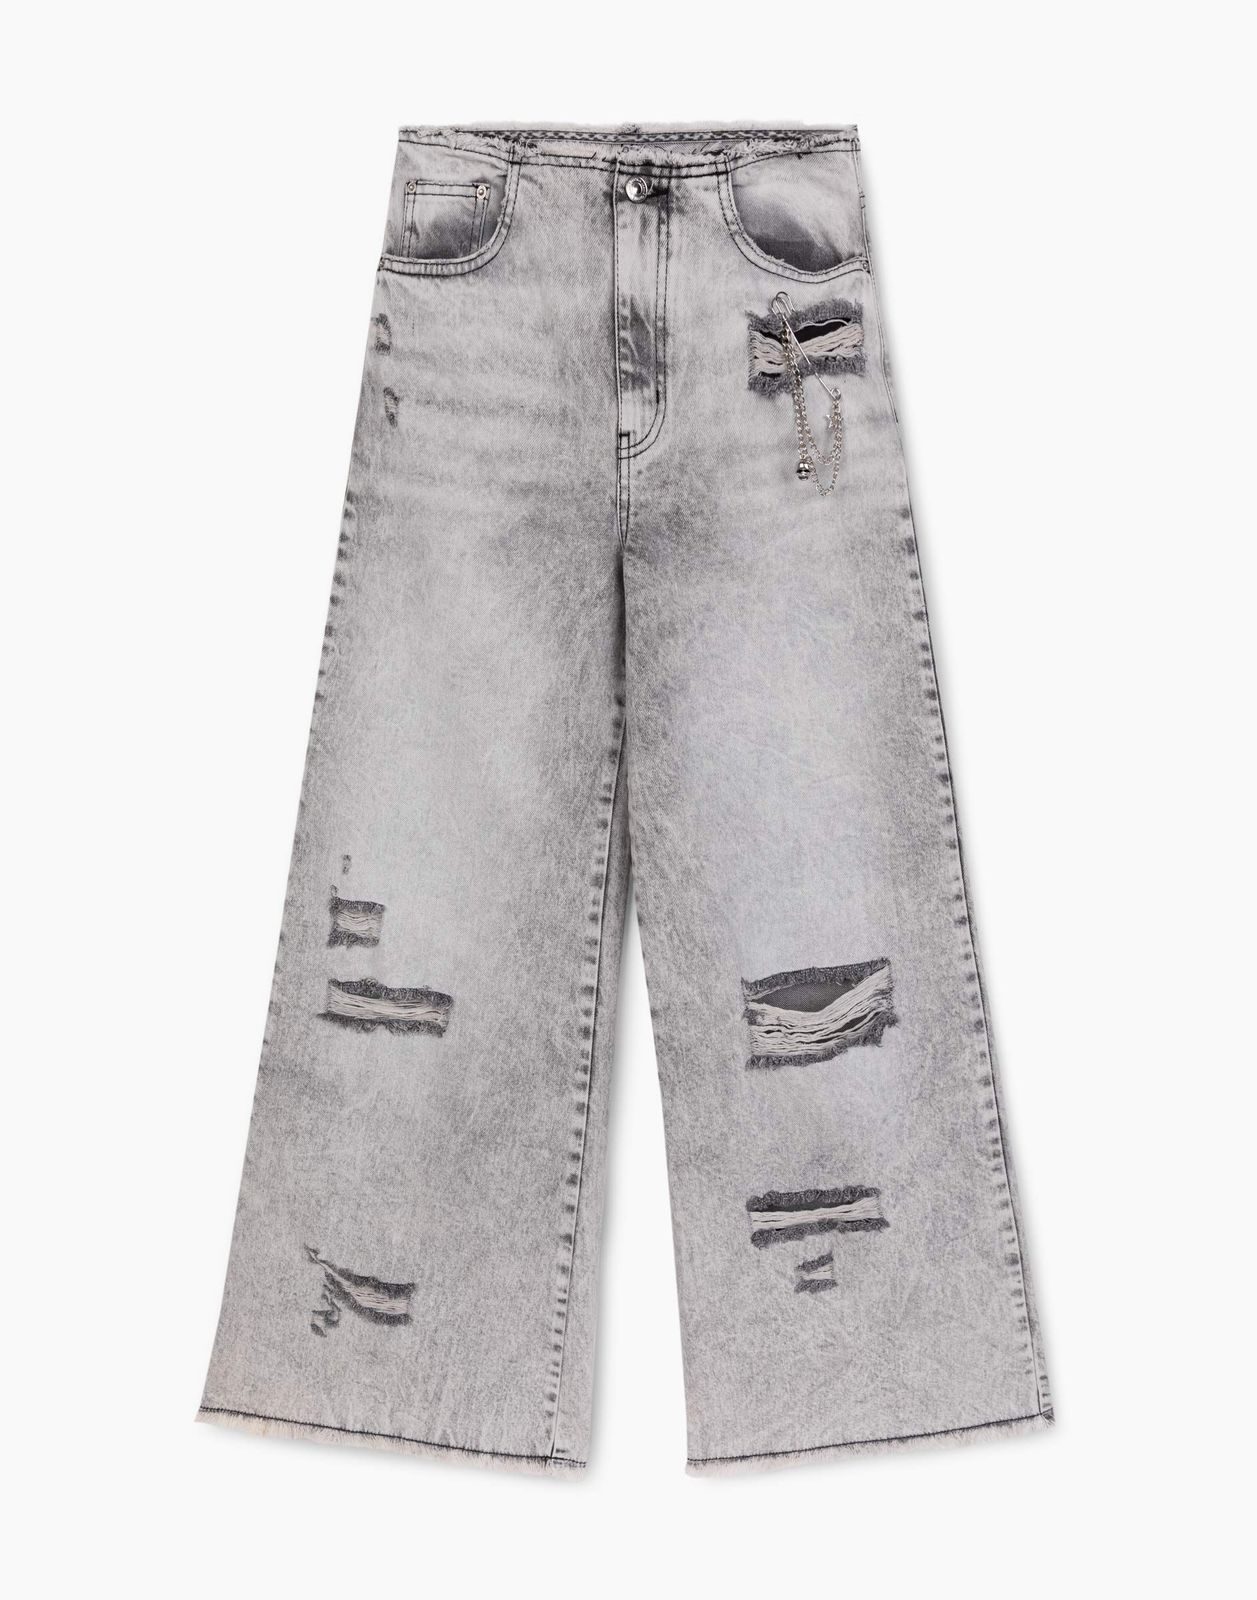 Джинсы Gloria Jeans GJN032569 серый /серый-лайт айс/ 16-17л/170 для девочки джинсы с декоративными дырками для девочки